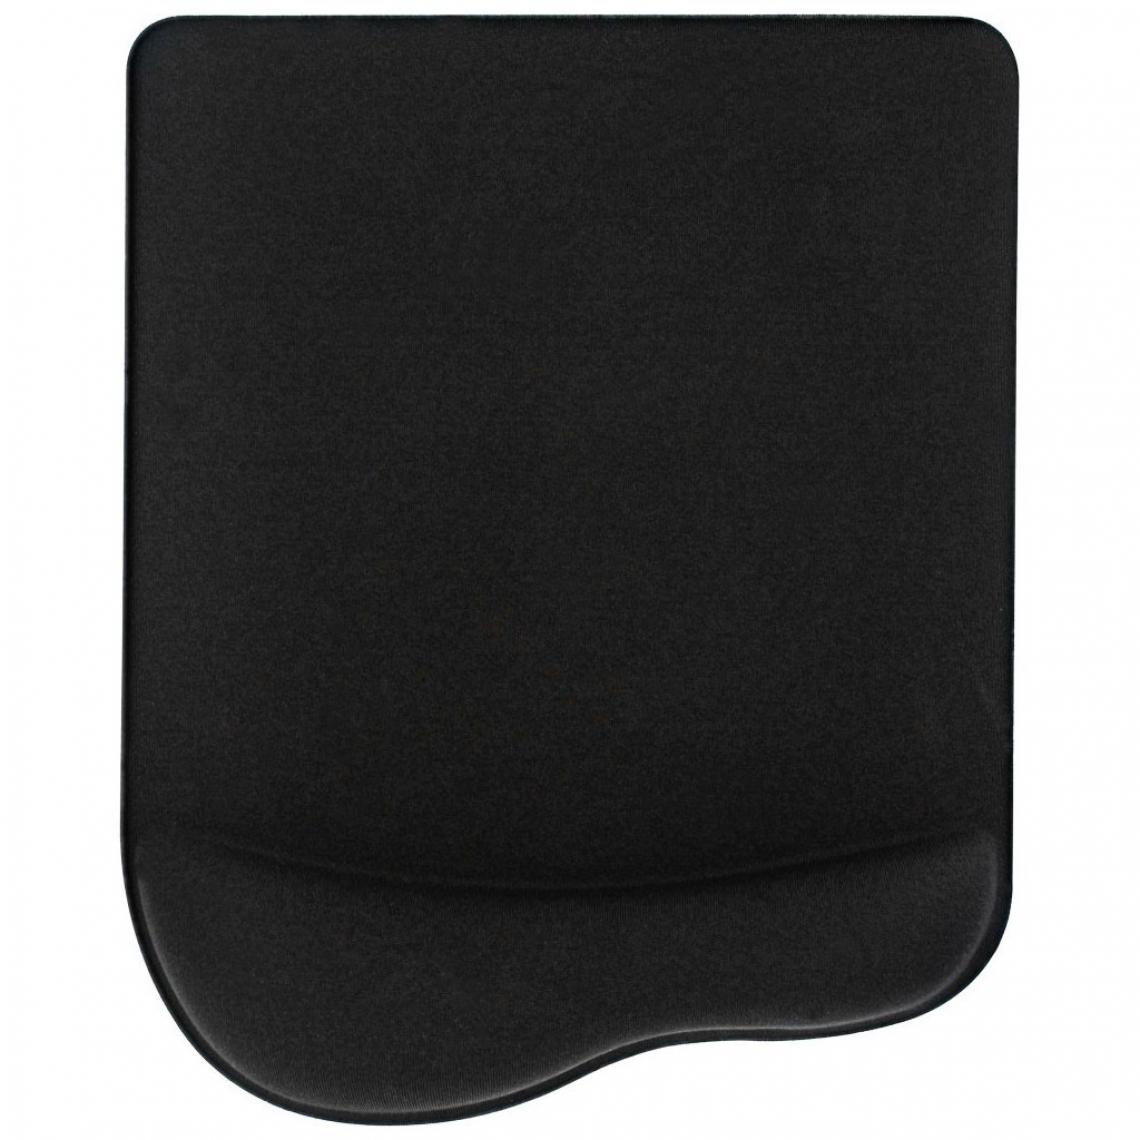 Inline - Tapis de souris InLine® avec repose-poignet en gel 235x185x25mm noir - Tapis de souris